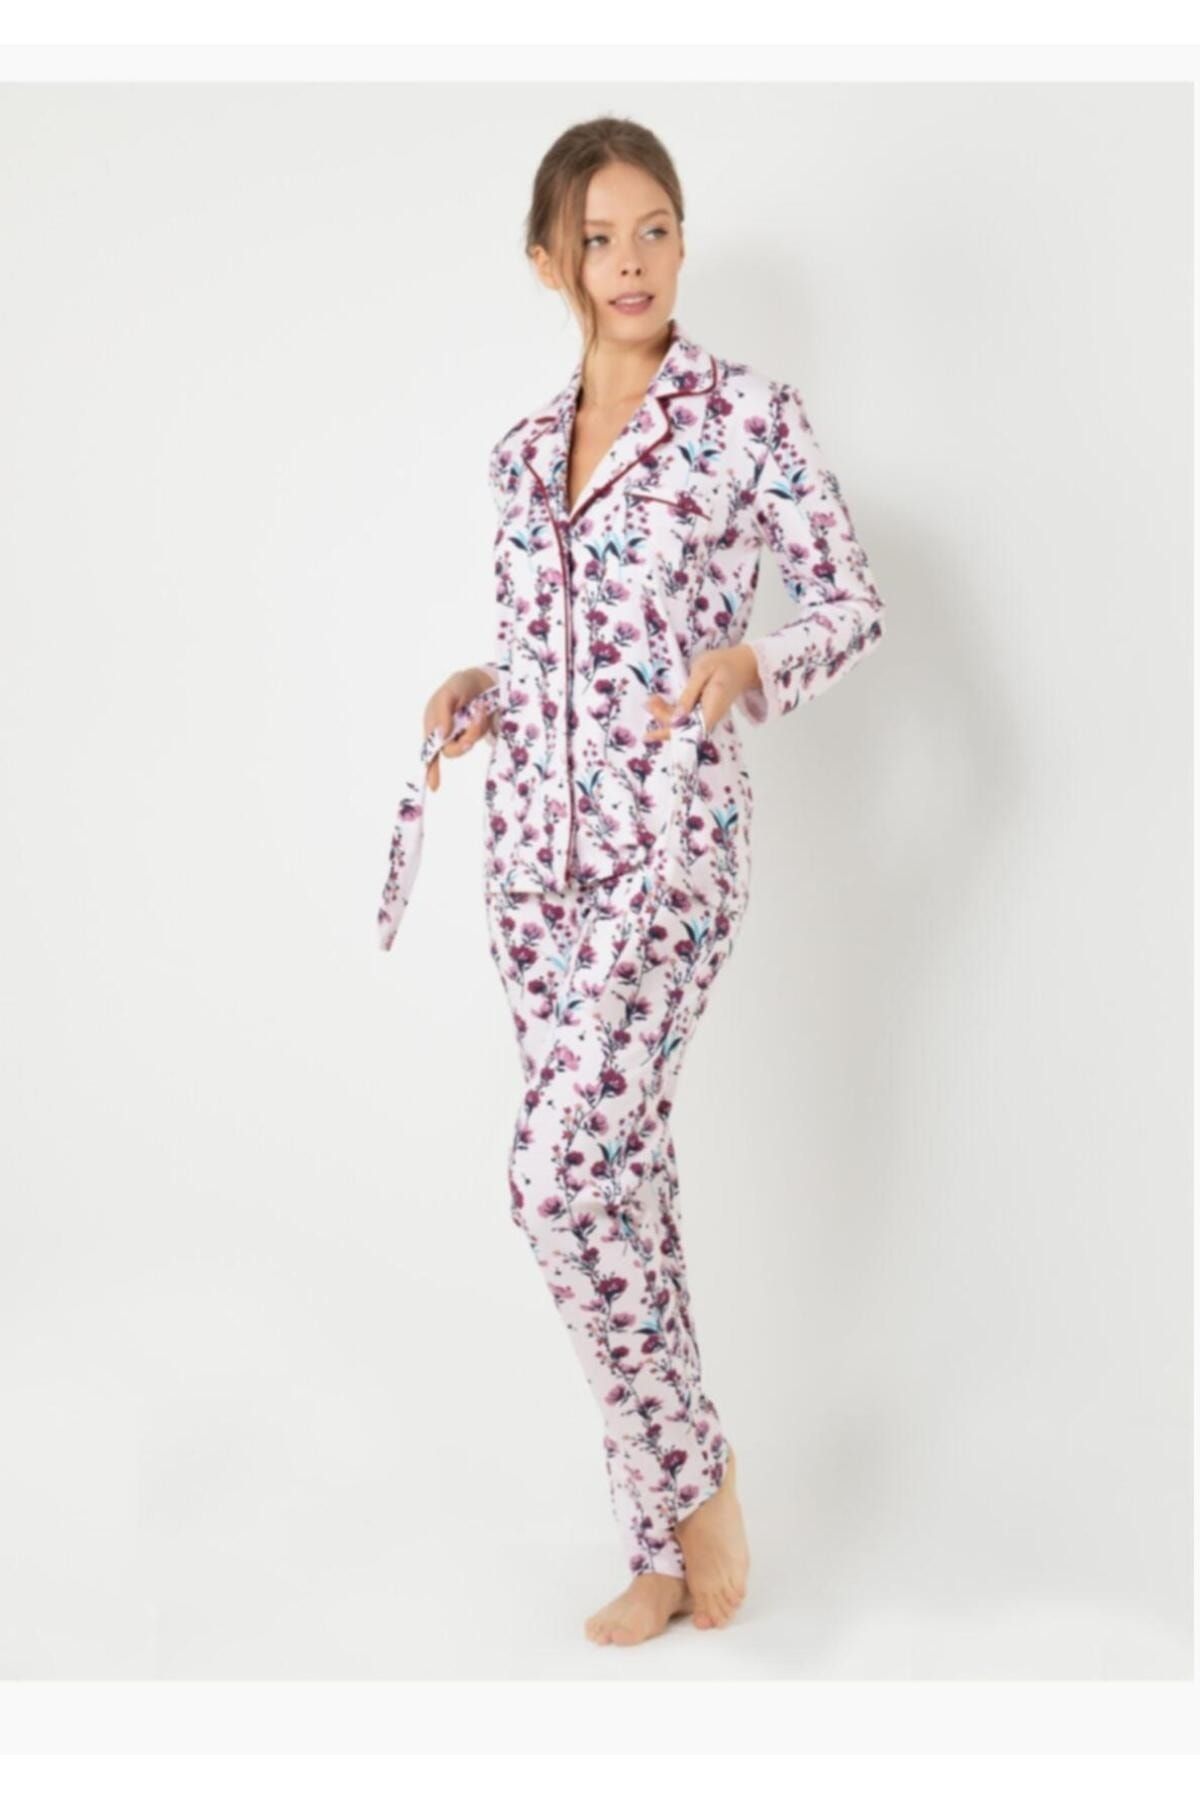 DoReMi Kadın Pijama Takımı Yeni Sezon